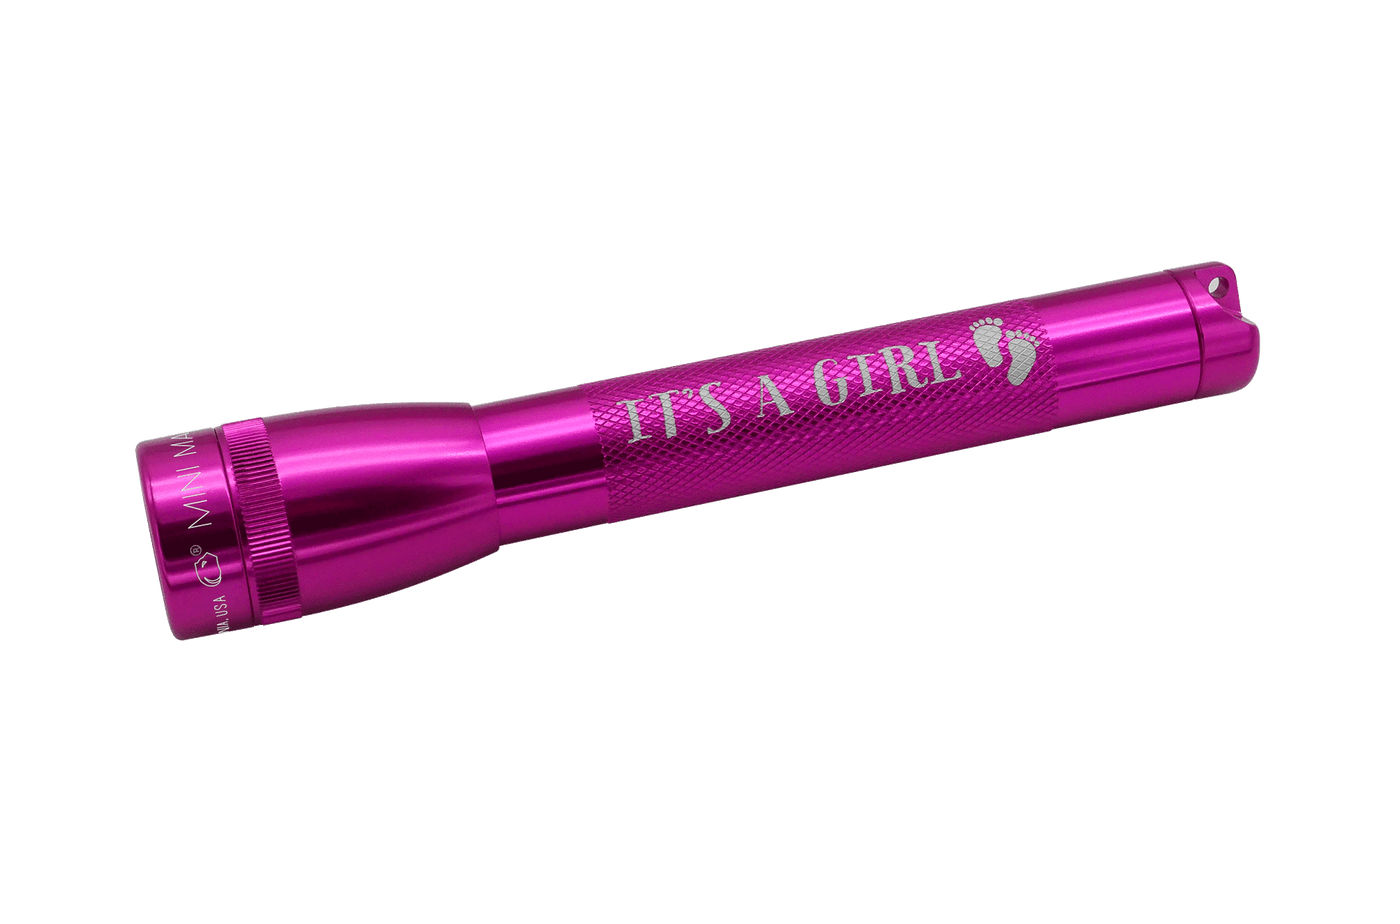 Mini Maglite - It's A Girl Xenon Flashlight